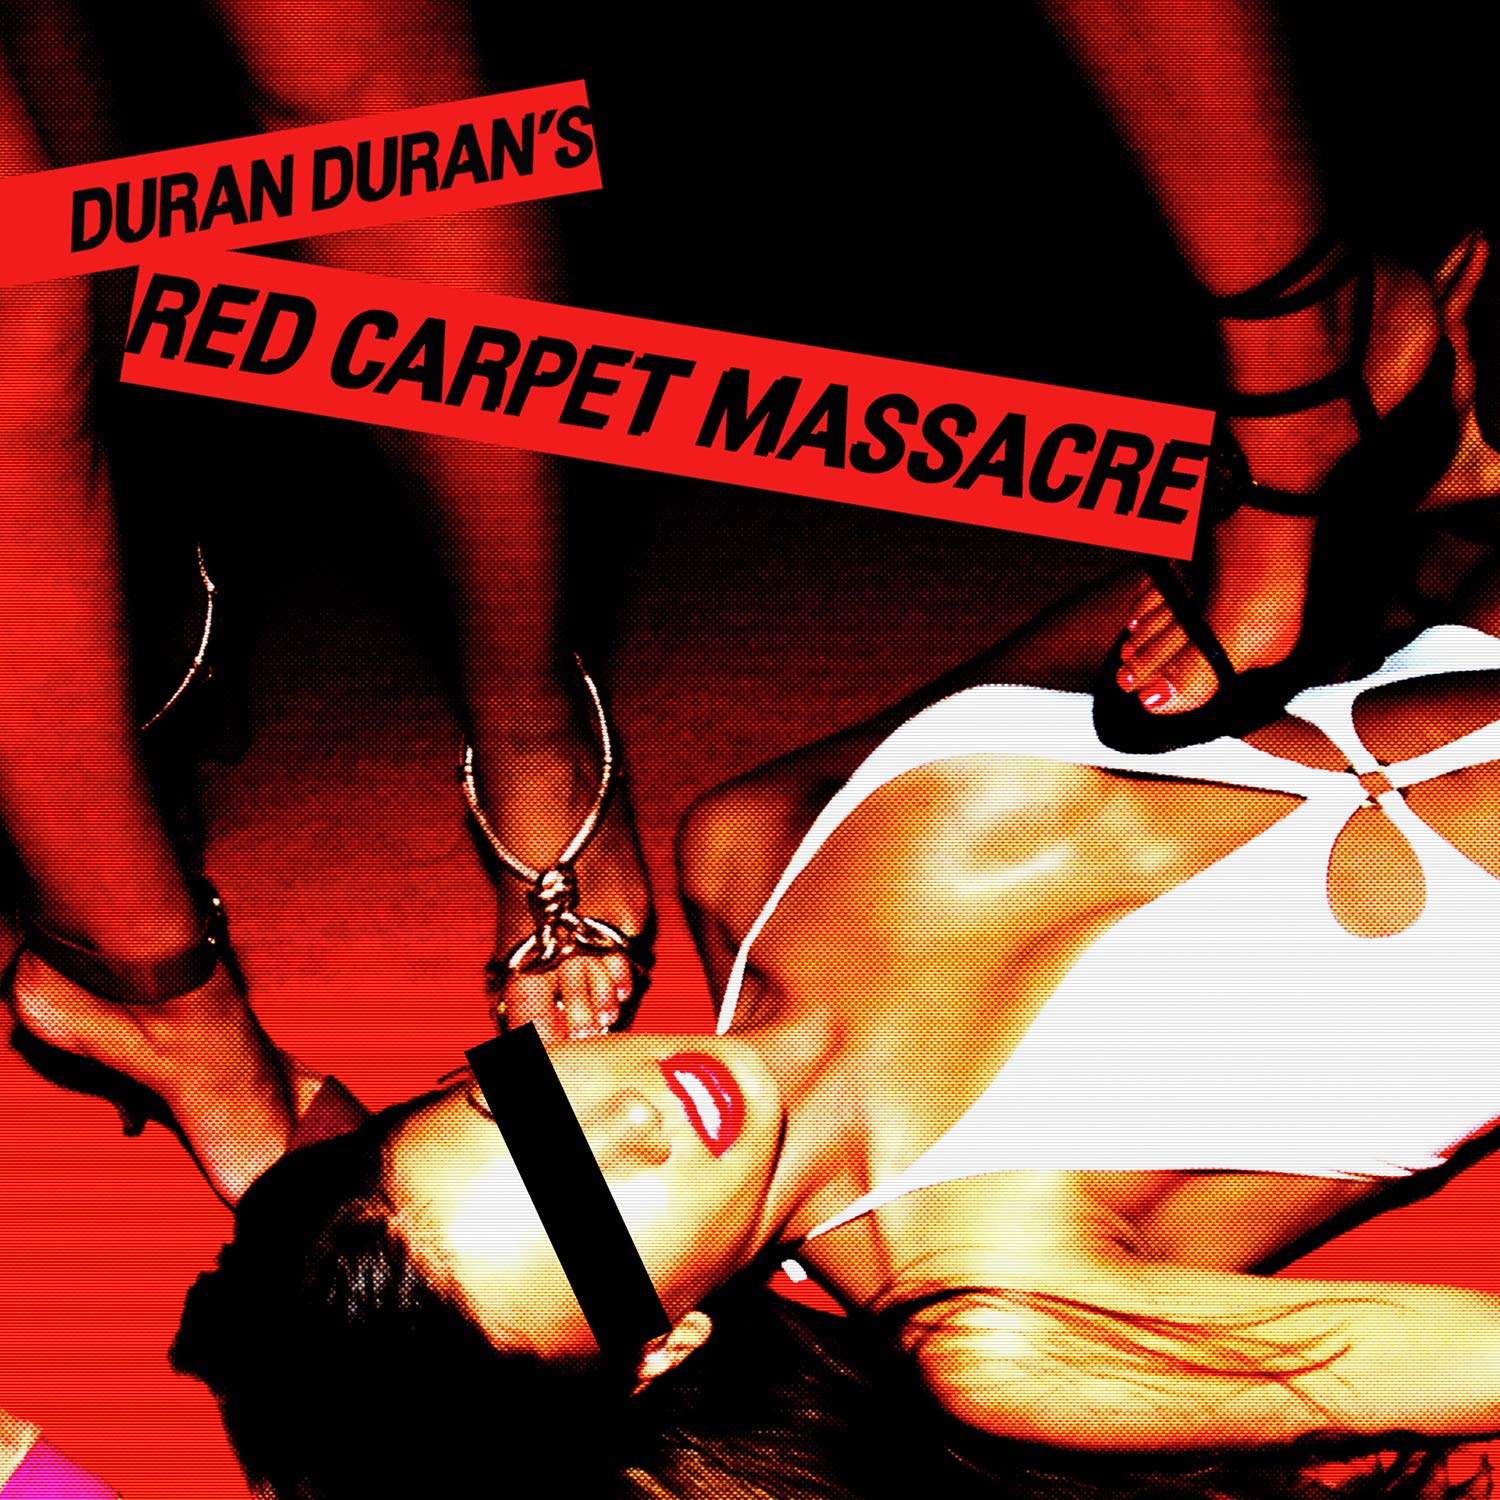 Виниловая пластинка Duran Duran, Red Carpet Massacre (4050538777314) виниловая пластинка duran duran live at hammersmith 82 5054197132827